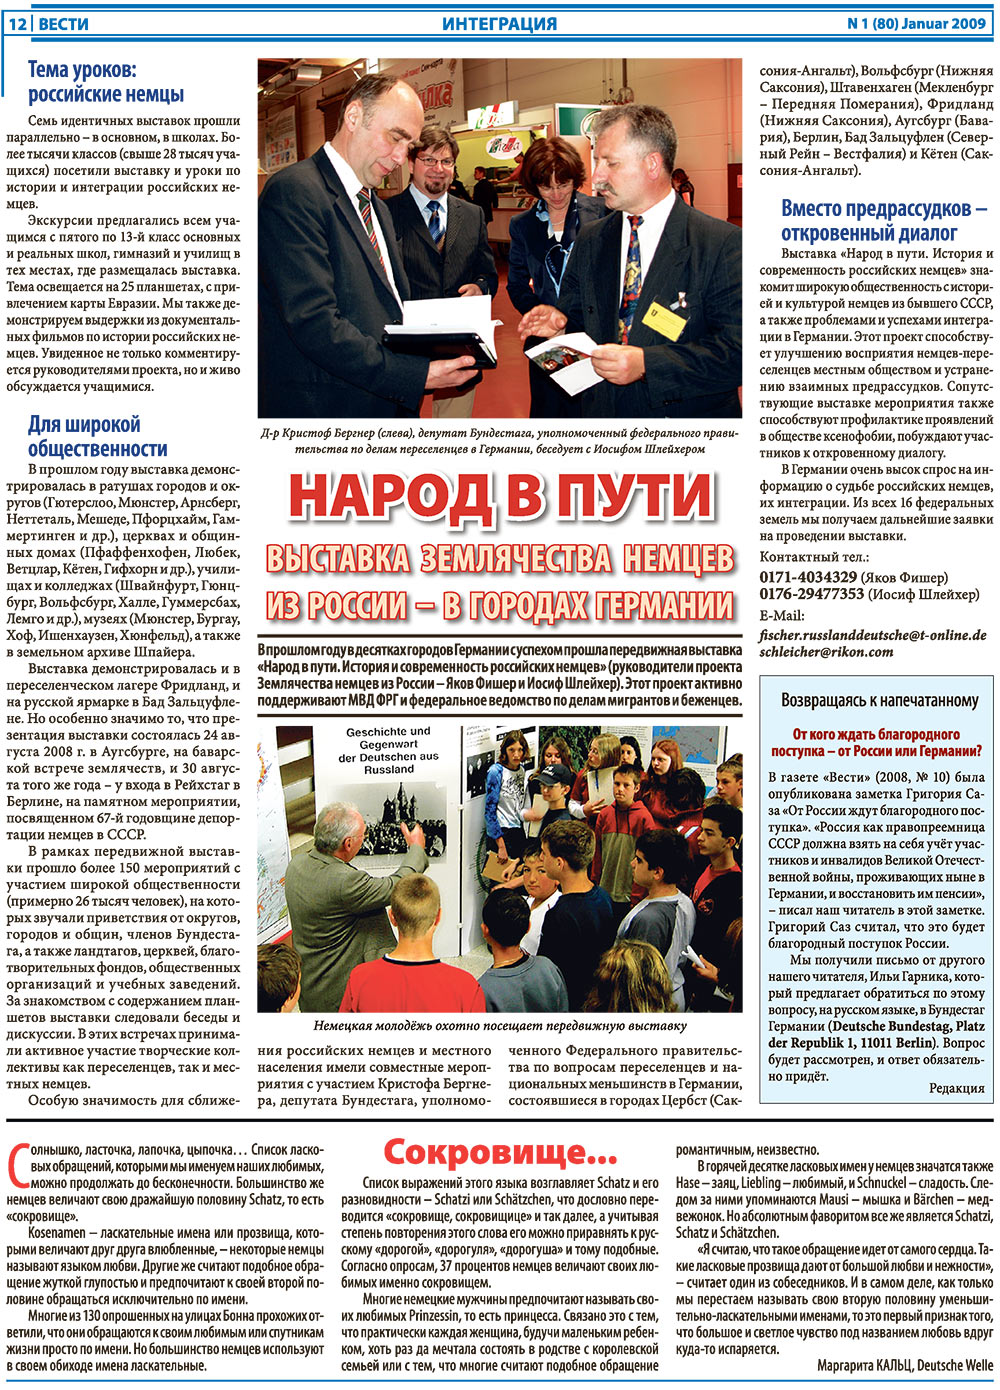 Вести, газета. 2009 №1 стр.12